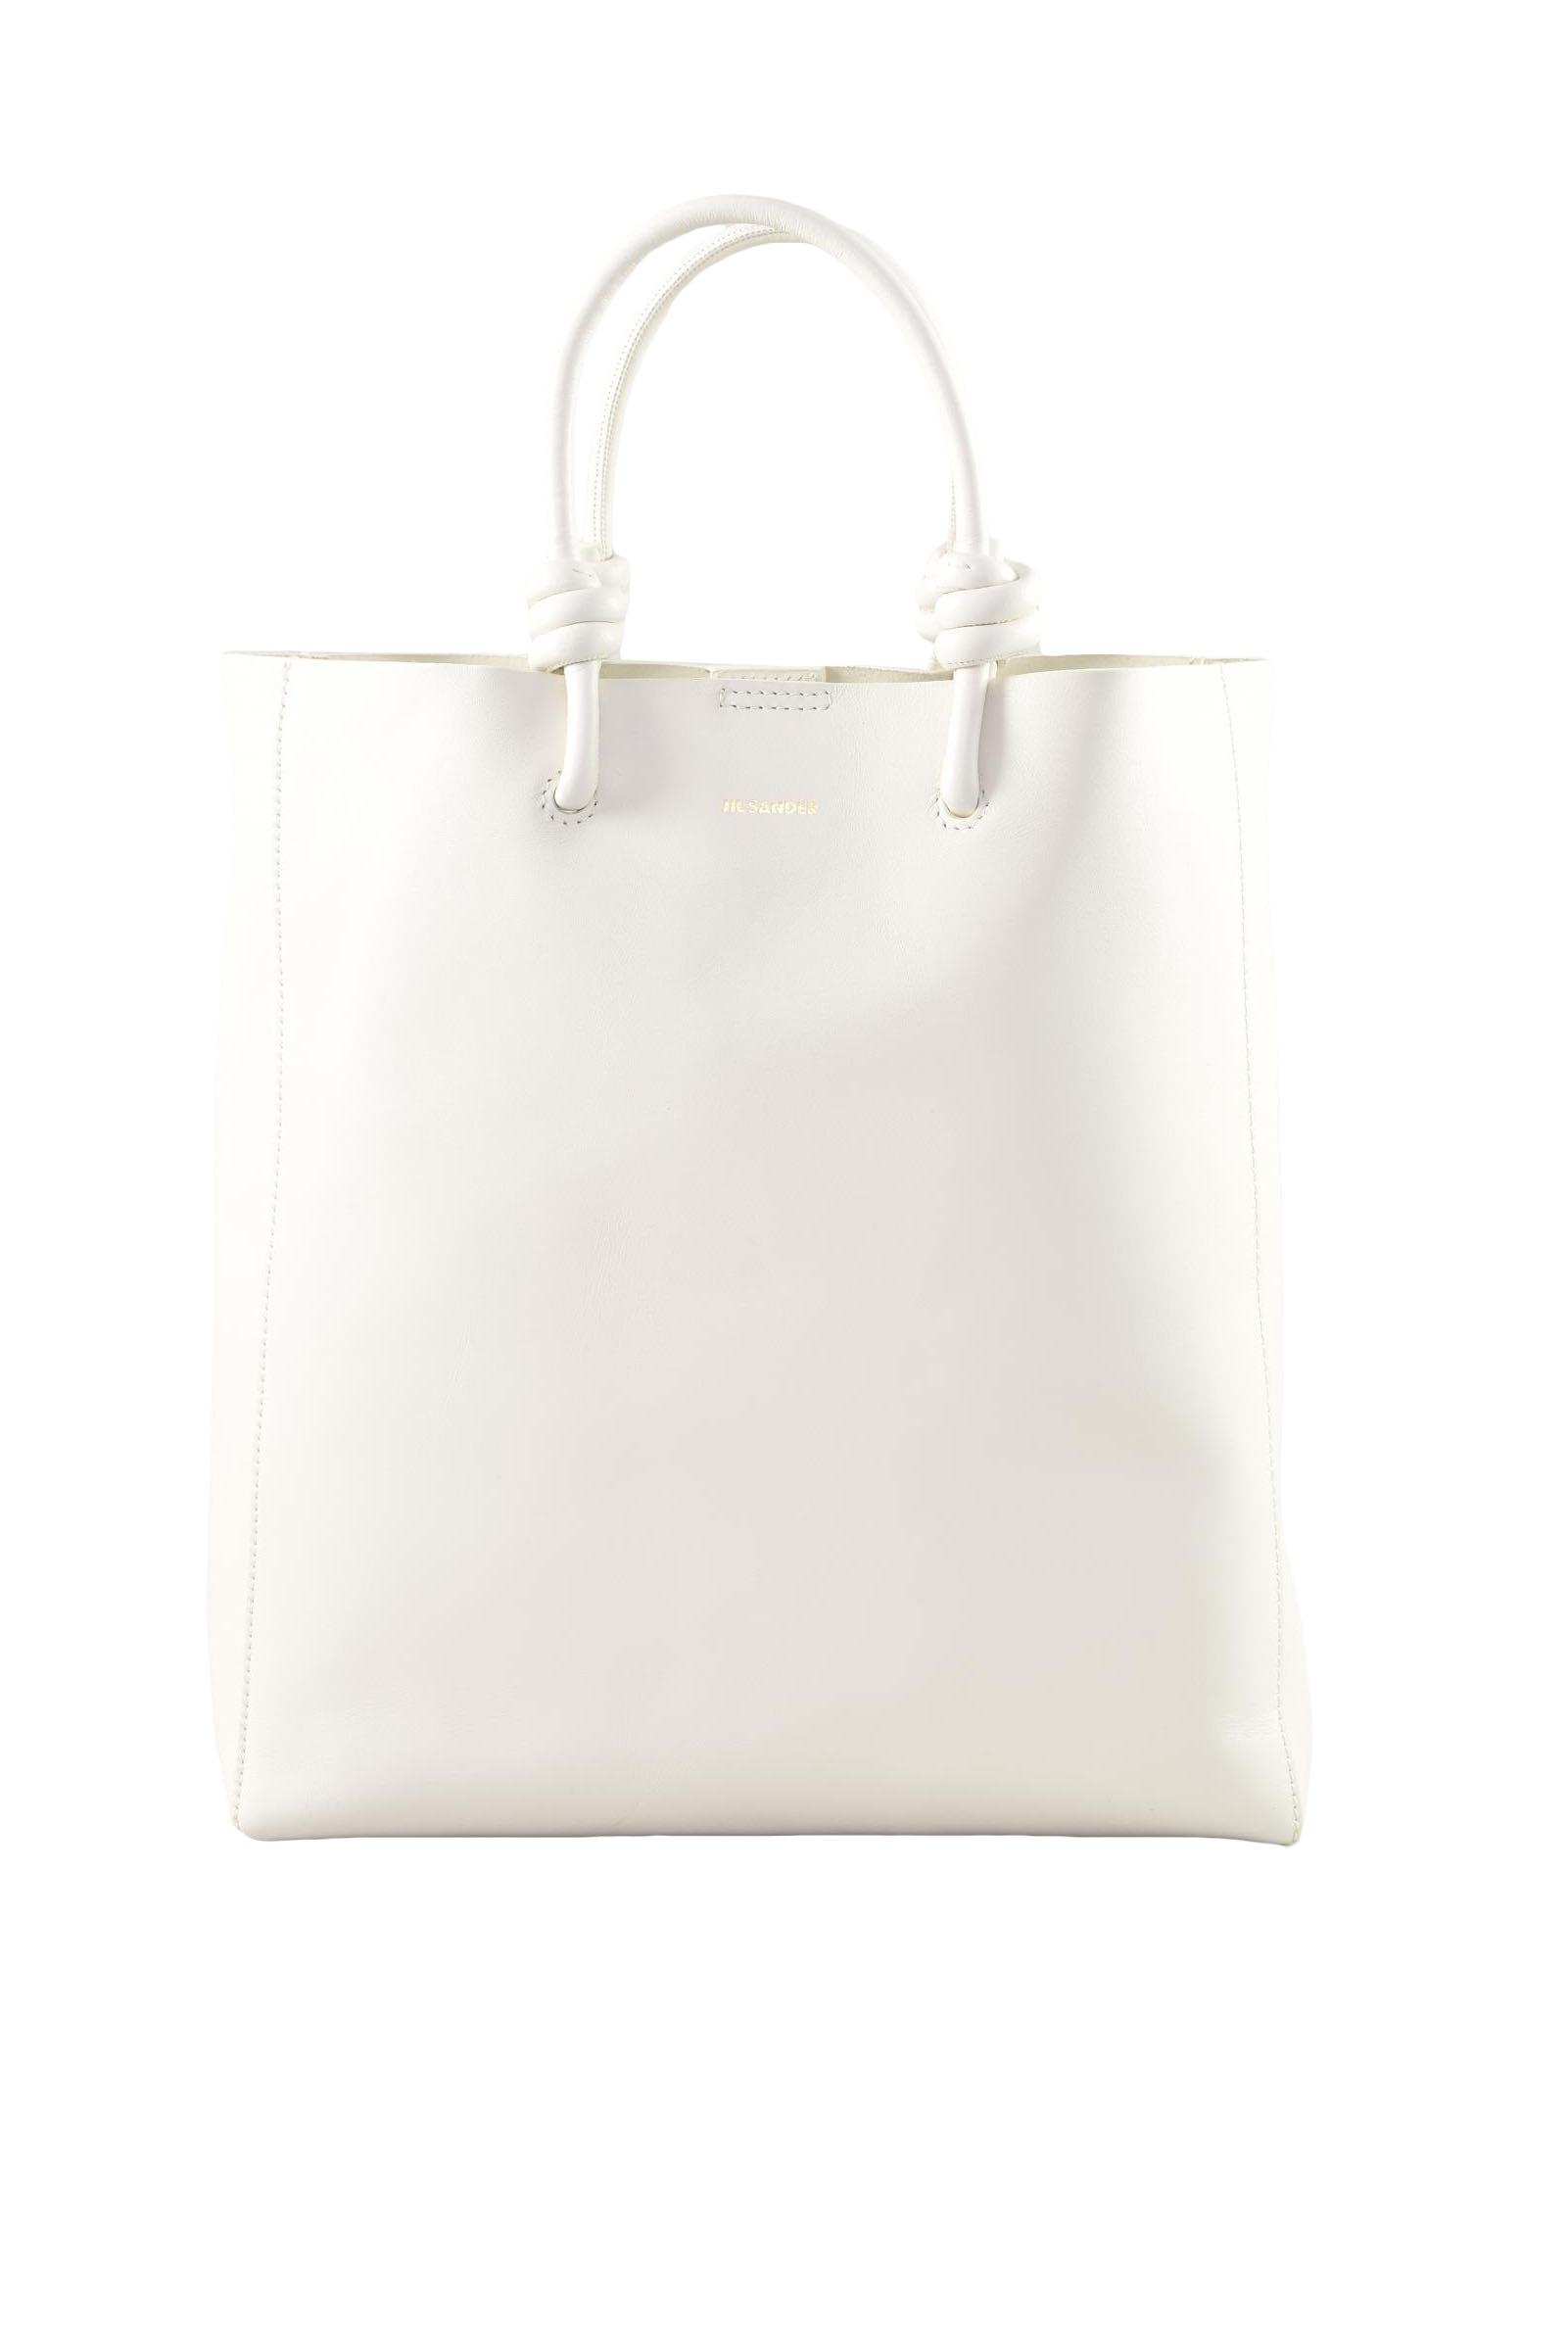 Jil Sander Women's White Handbag